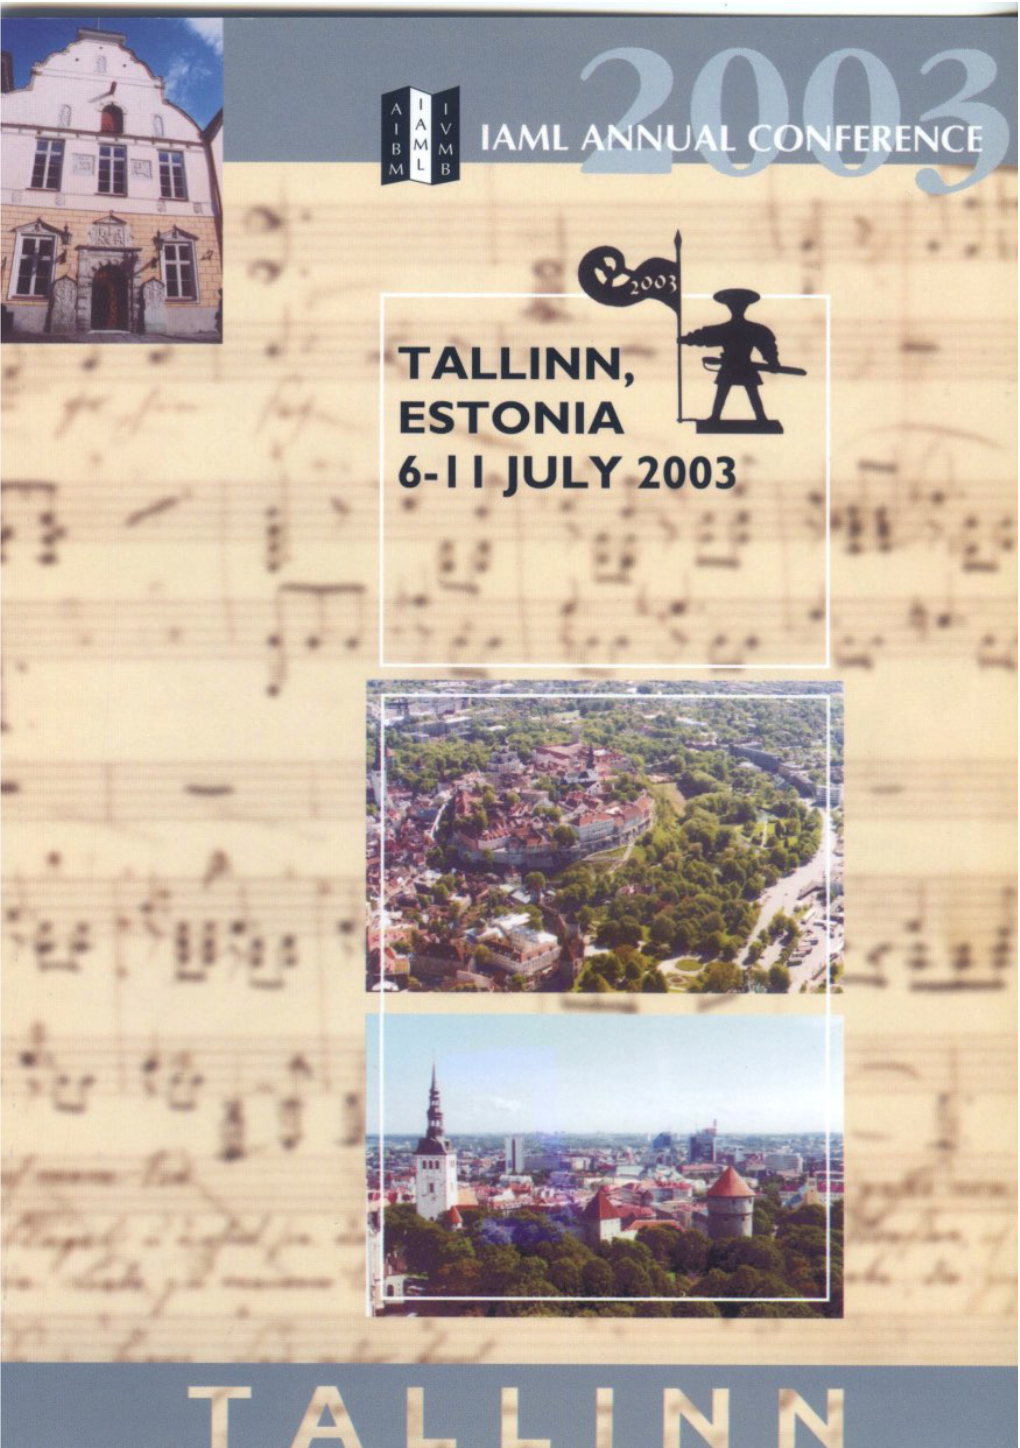 TALLINN, ESTONIA 6- I I JULY 2003 Eft, ••�